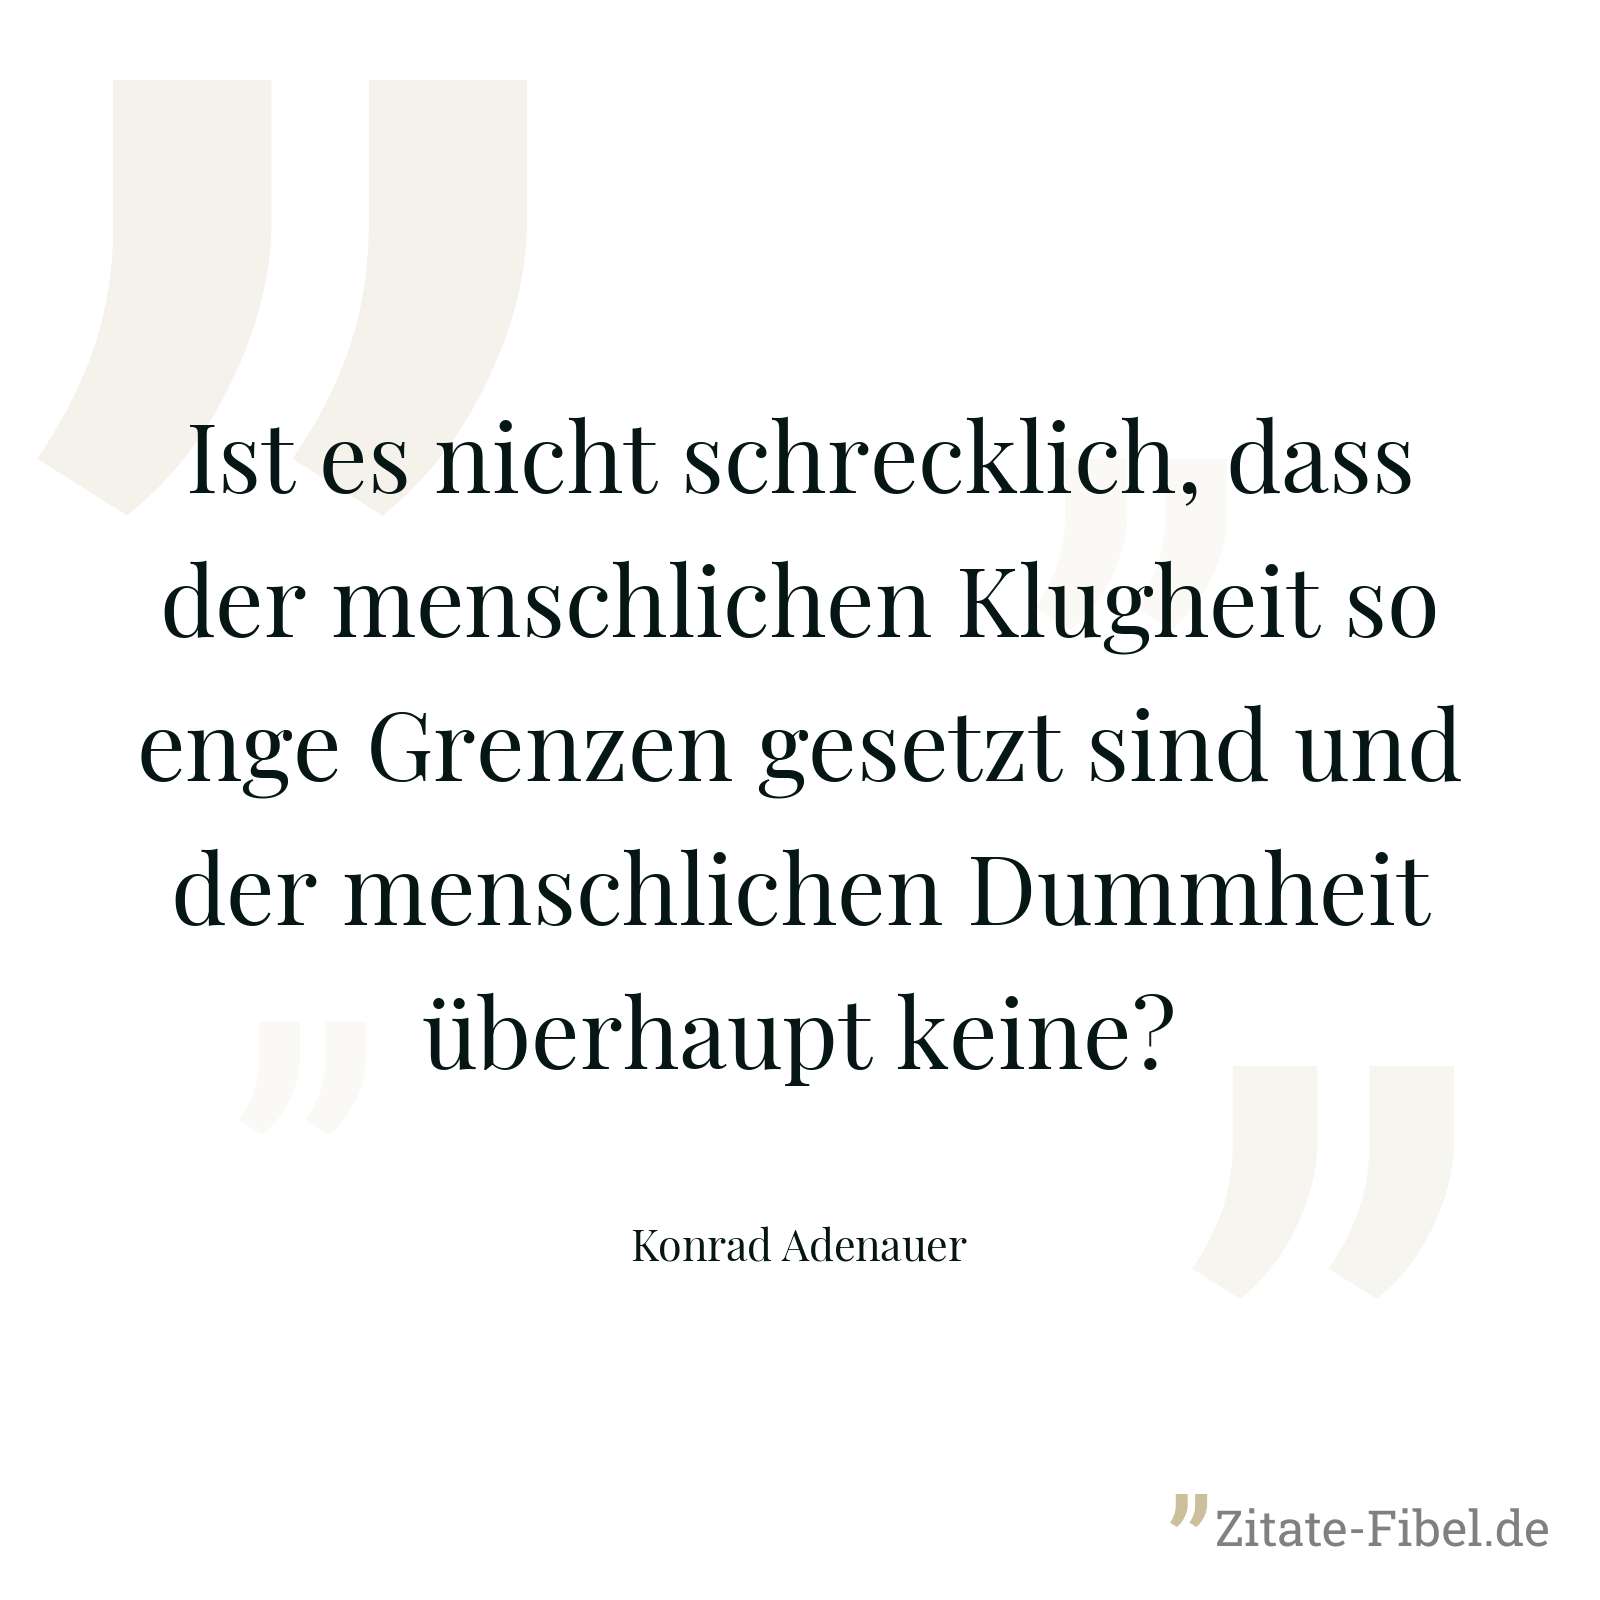 Ist es nicht schrecklich, dass der menschlichen Klugheit so enge Grenzen gesetzt sind und der menschlichen Dummheit überhaupt keine? - Konrad Adenauer